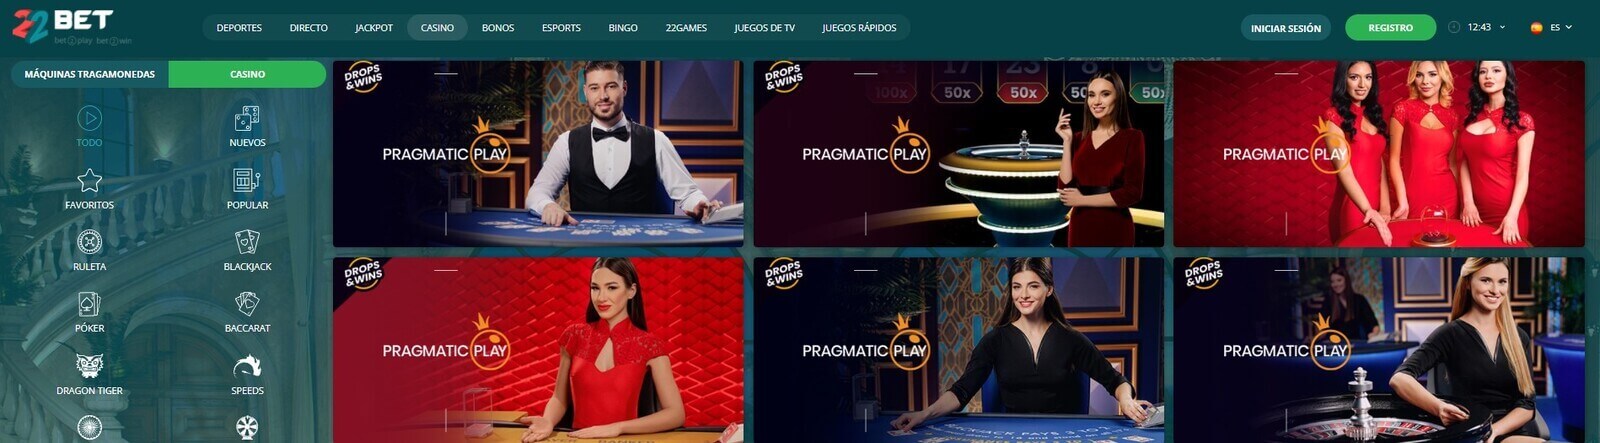 22Bet Casino online en Android